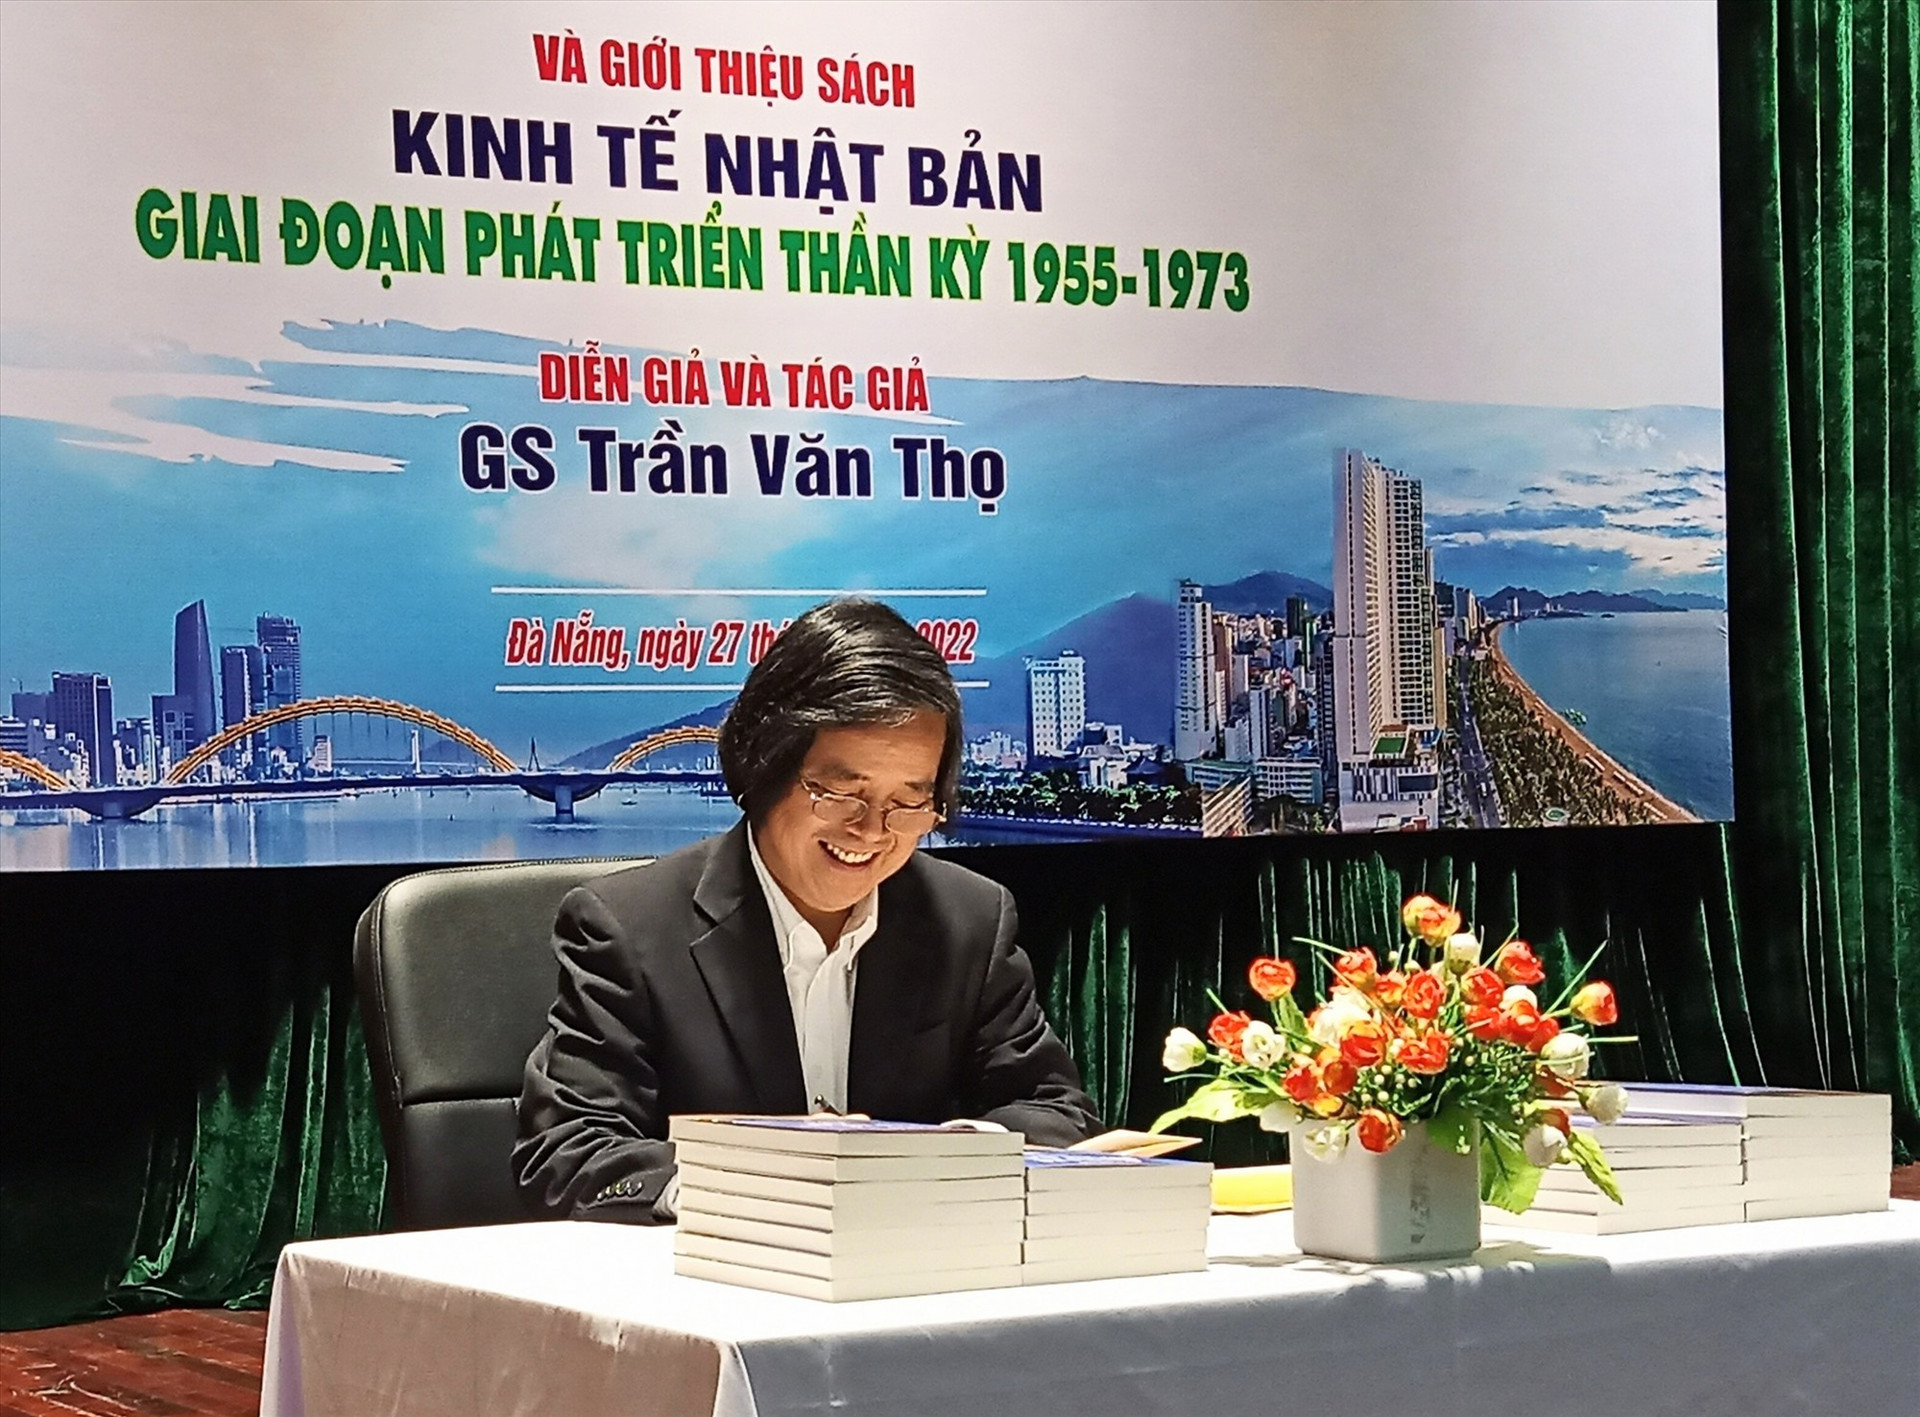 GS Trần Văn Thọ tại buổi giới thiệu cuốn sách “Kinh tế Nhật Bản-giai đoạn phát triển thần kỳ 1955-1973” tại Đà Nẵng. Ảnh: ANH QUÂN